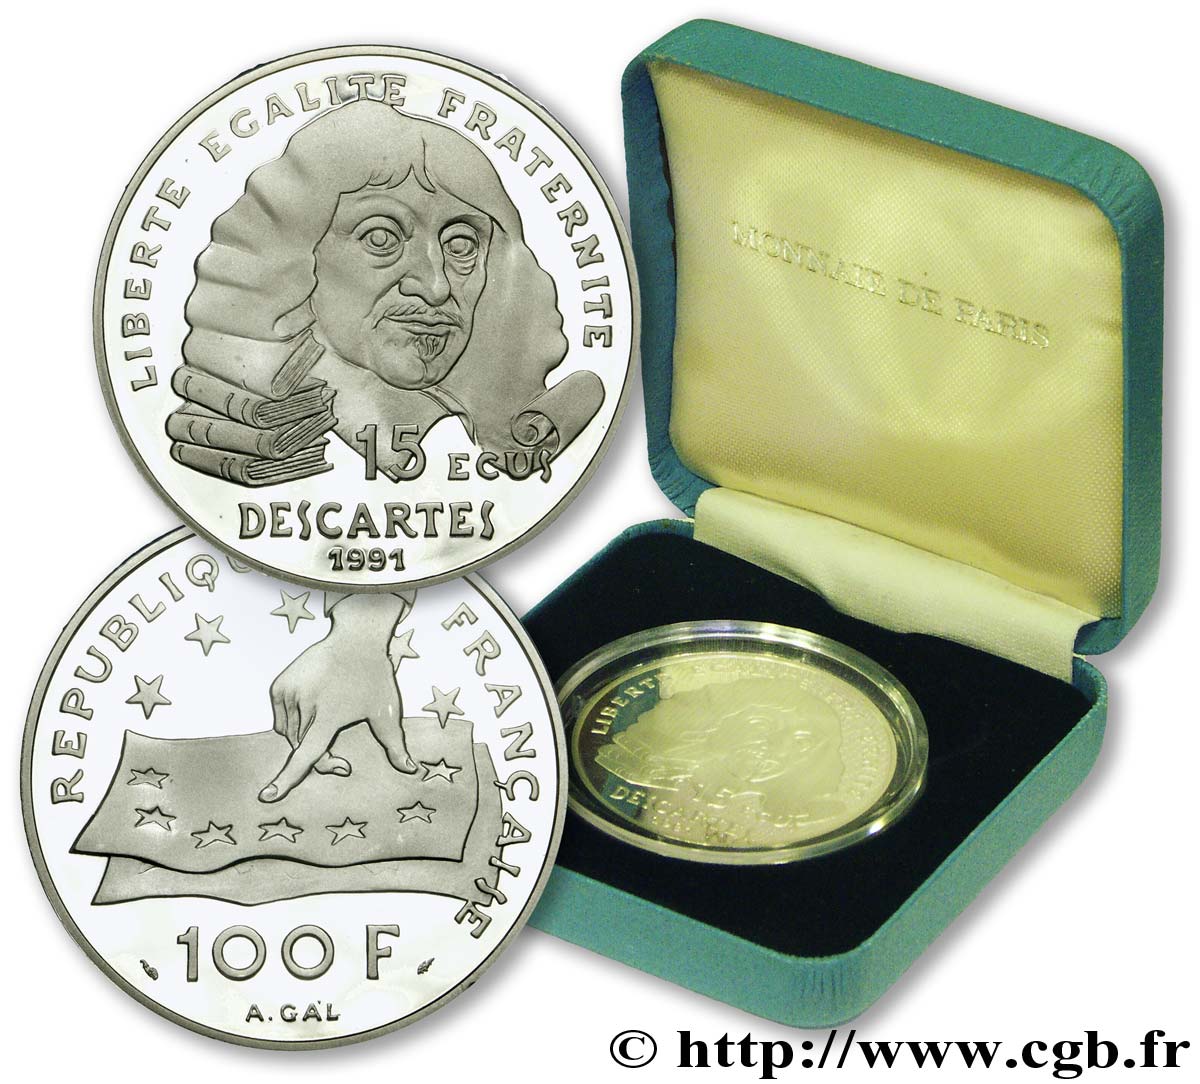 Belle Epreuve 15 écus / 100 francs - Descartes 1991  F.2001 01 FDC 